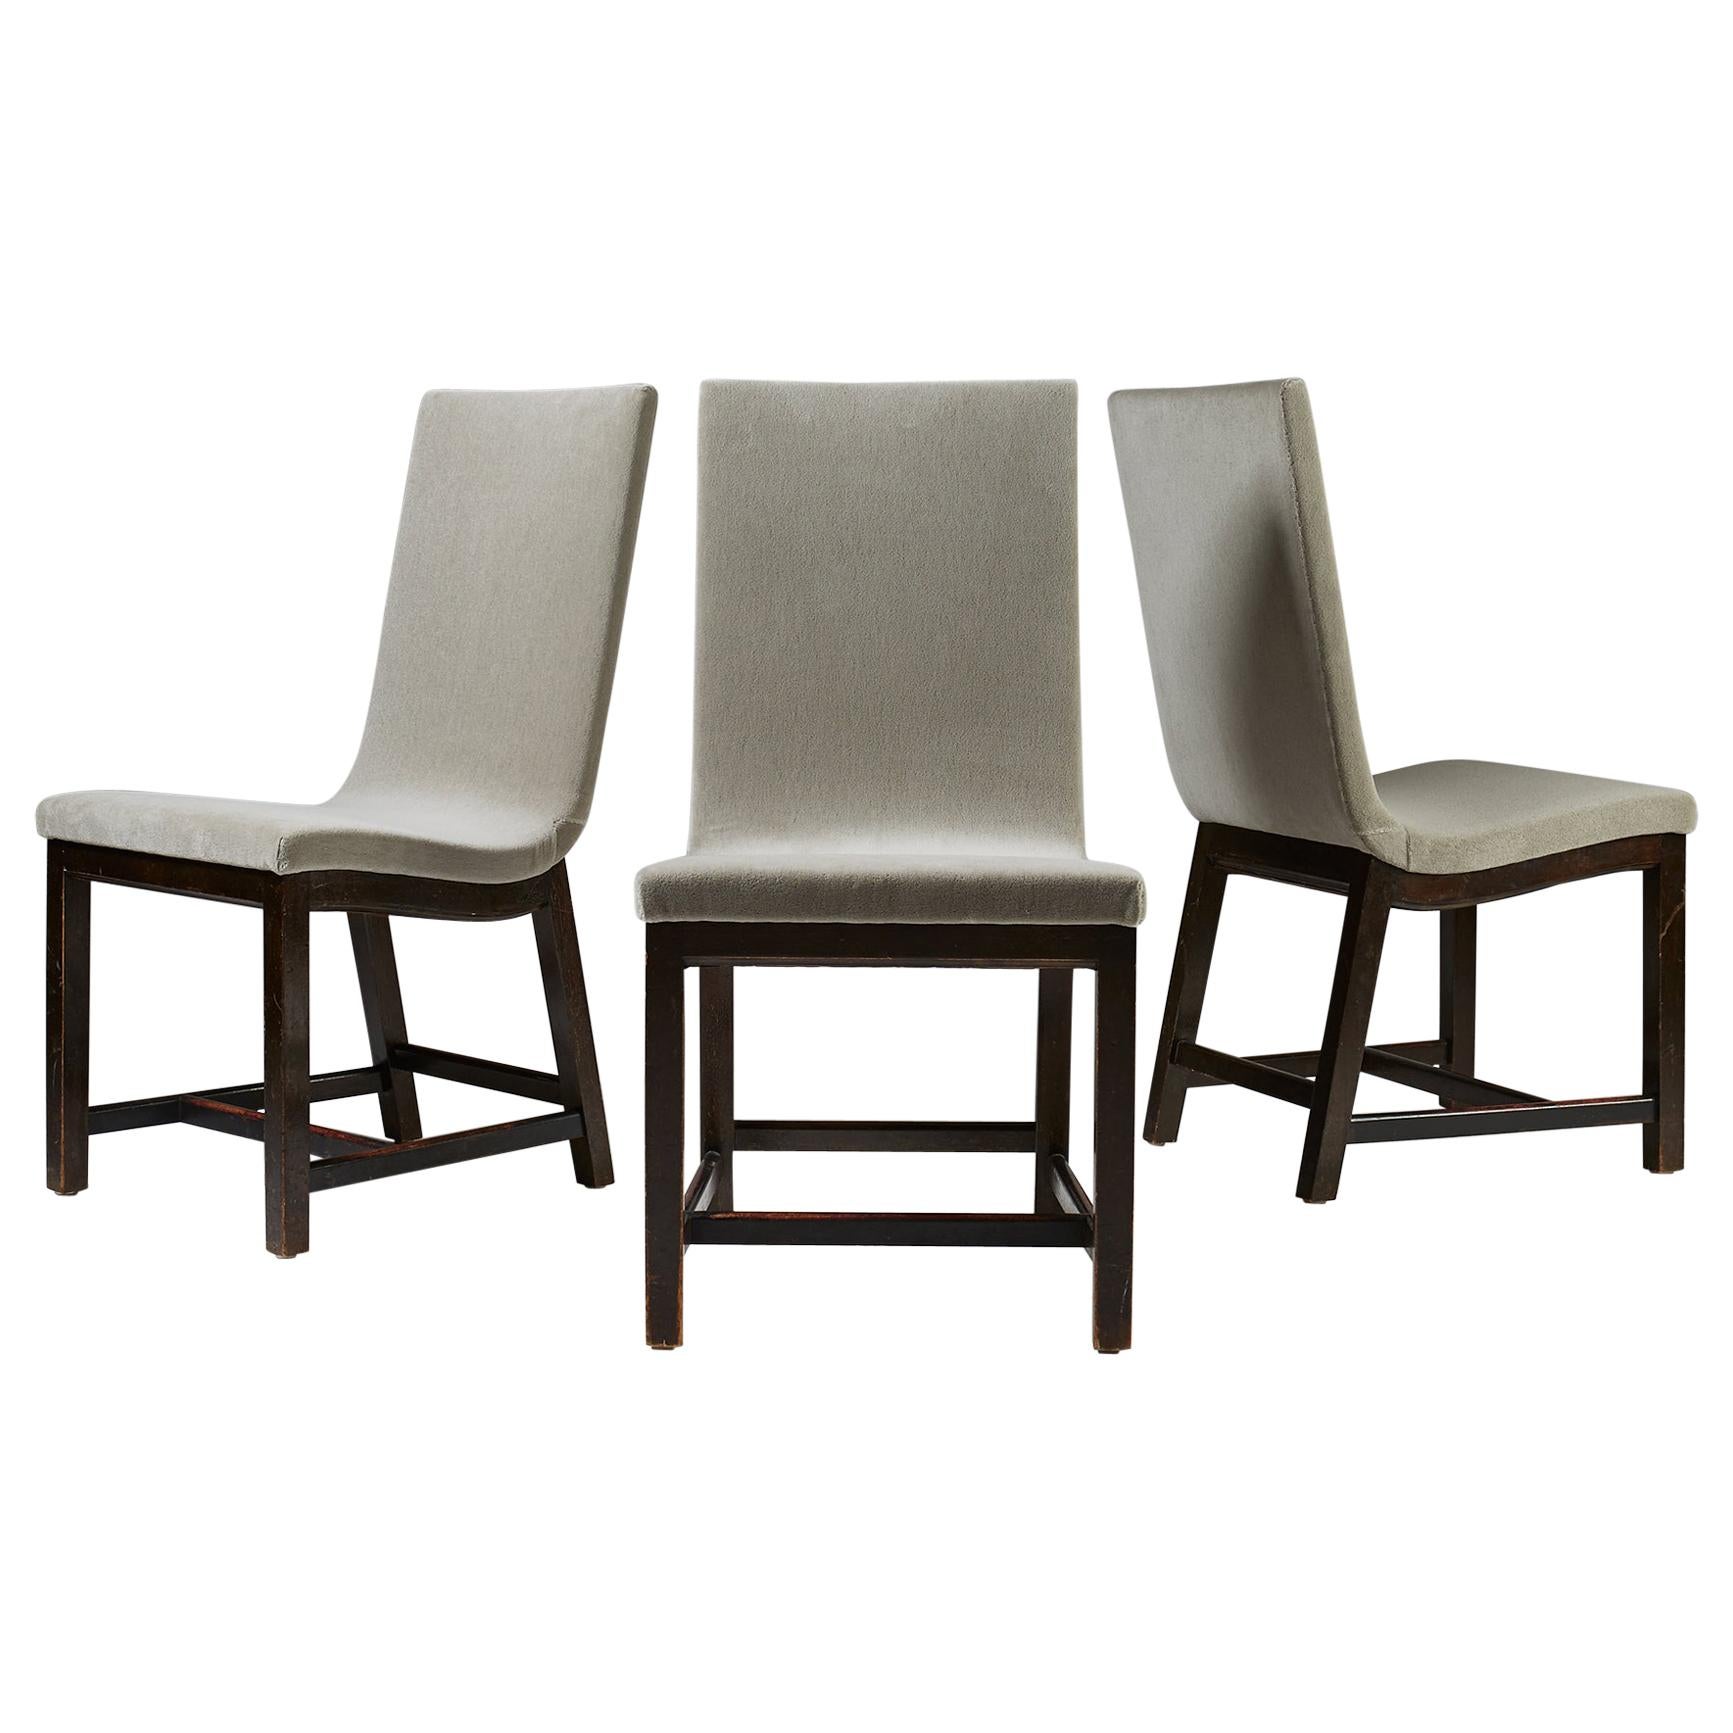 Set of Three Chairs “Typenko” by Axel Einar Hjorth, Nordiska Kompaniet, Sweden